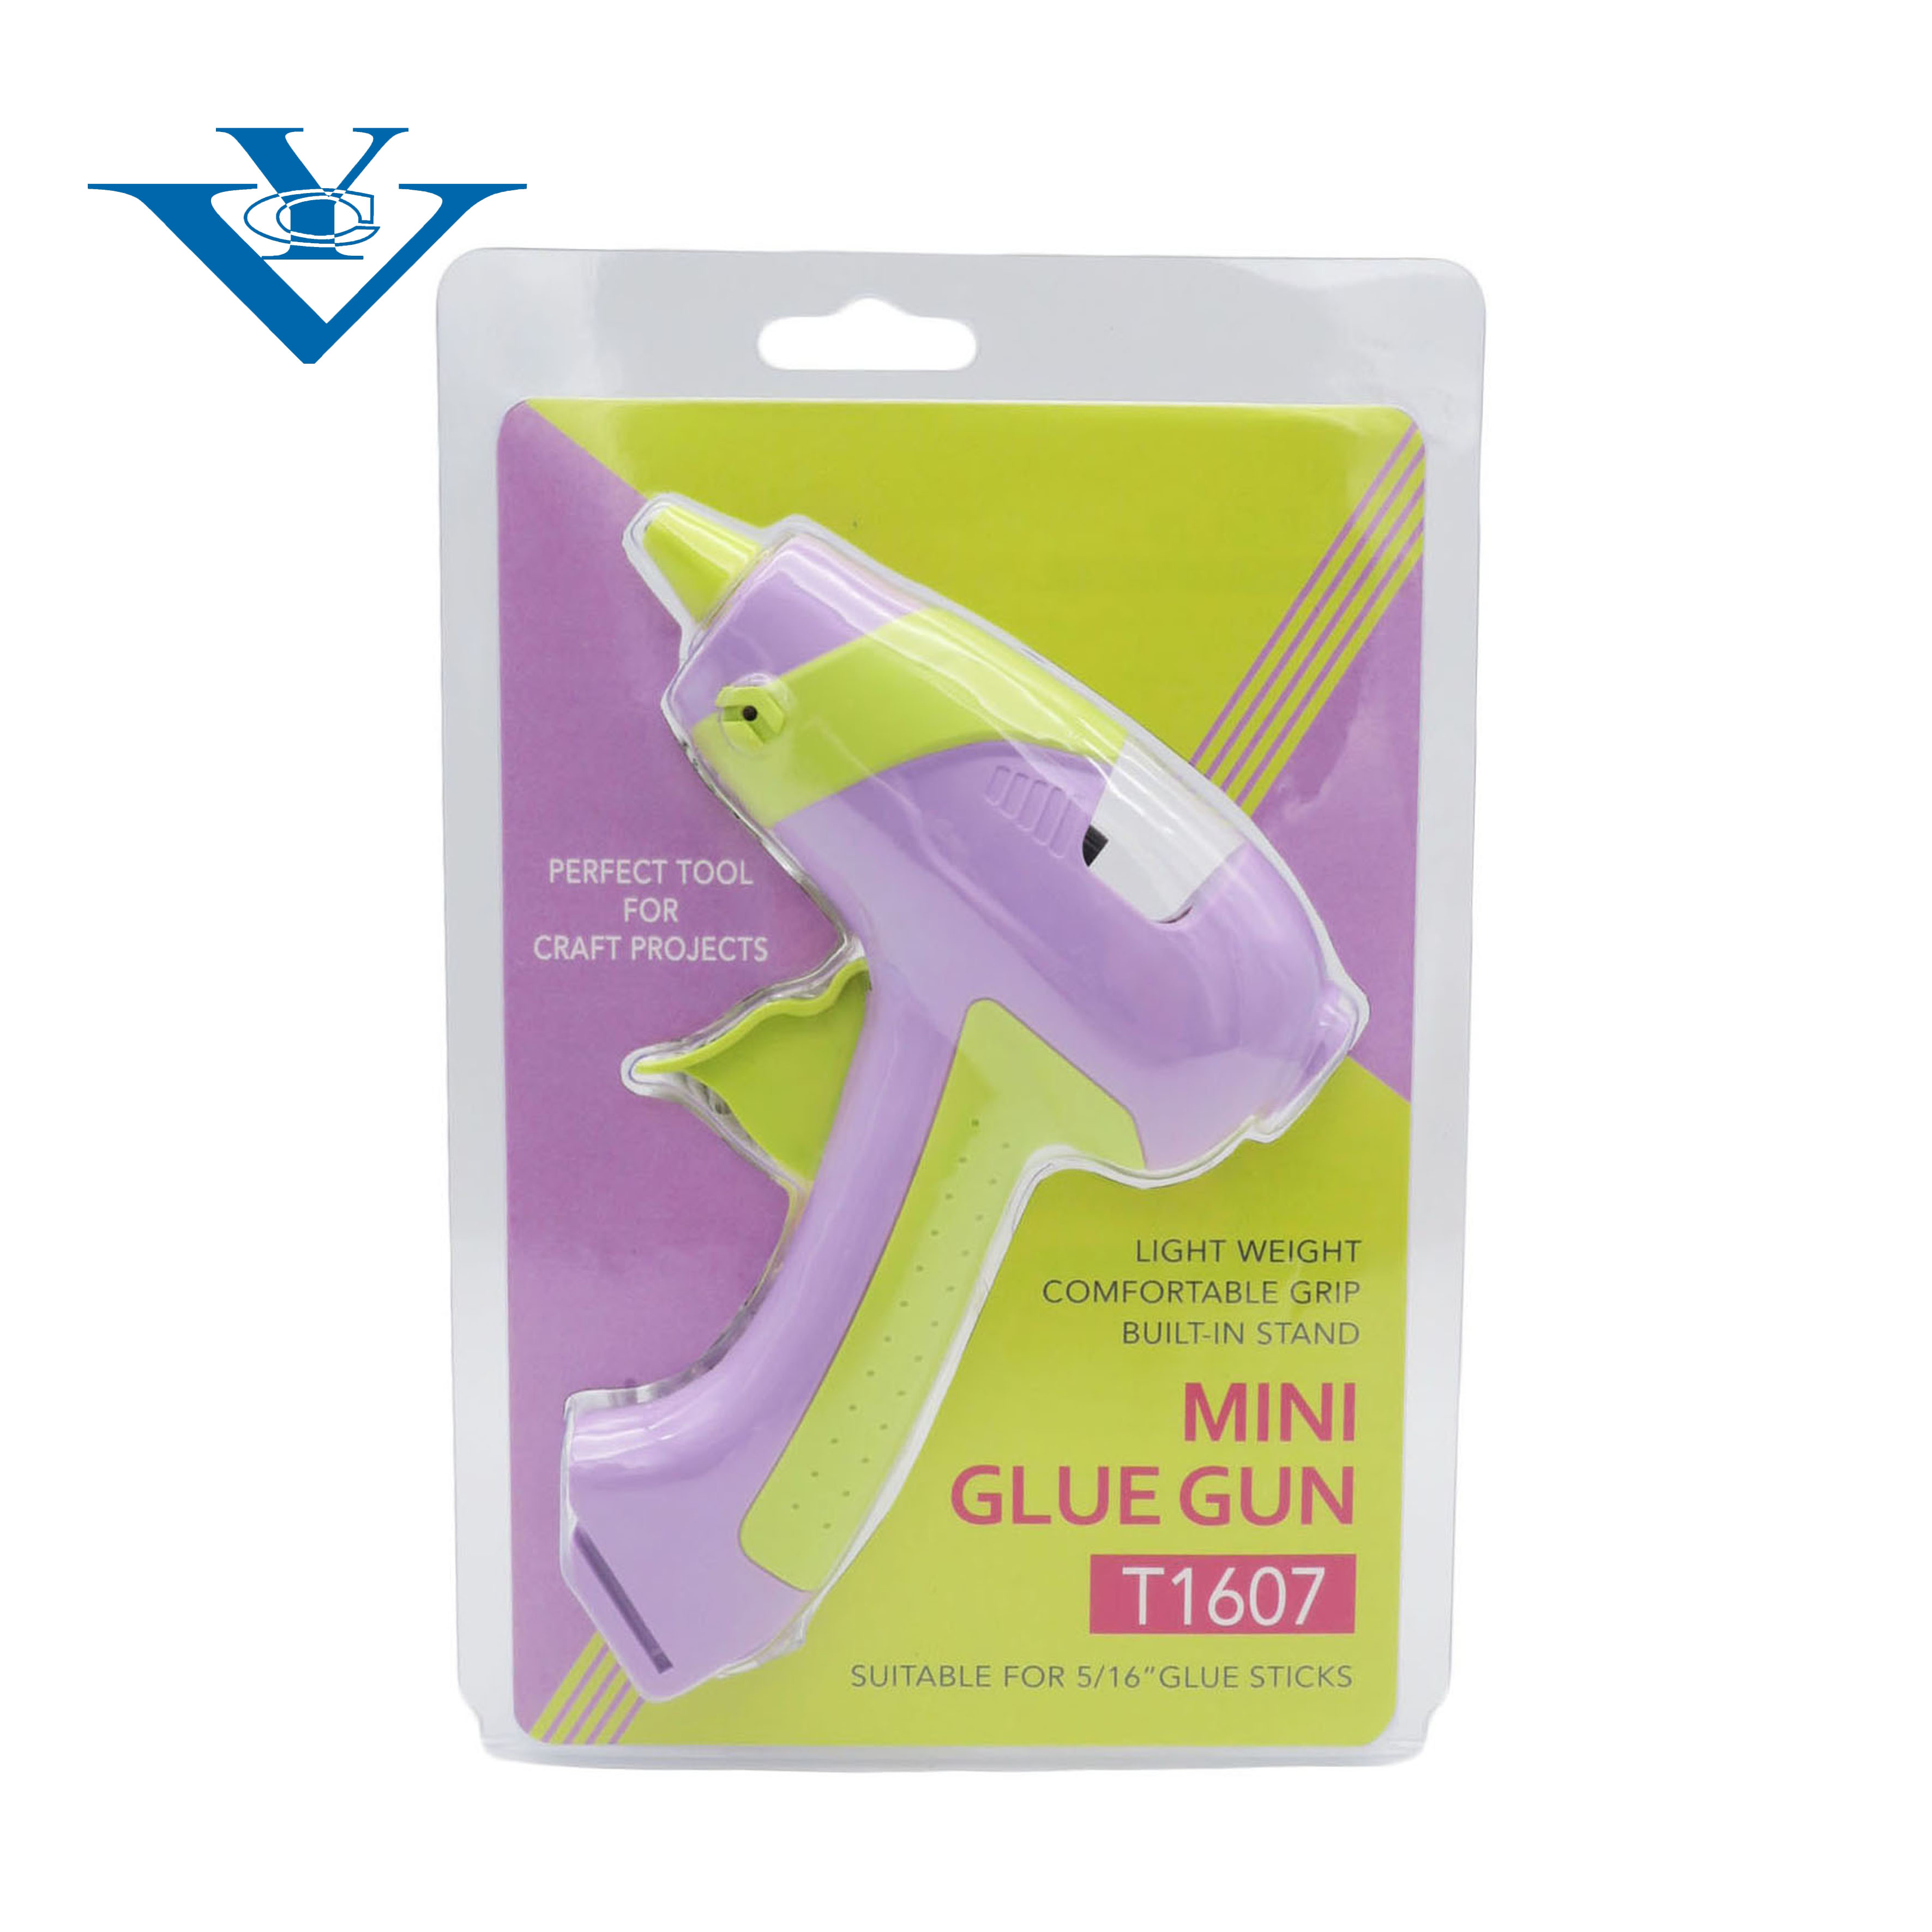 T1607,Mini Glue Gun with glue sticks